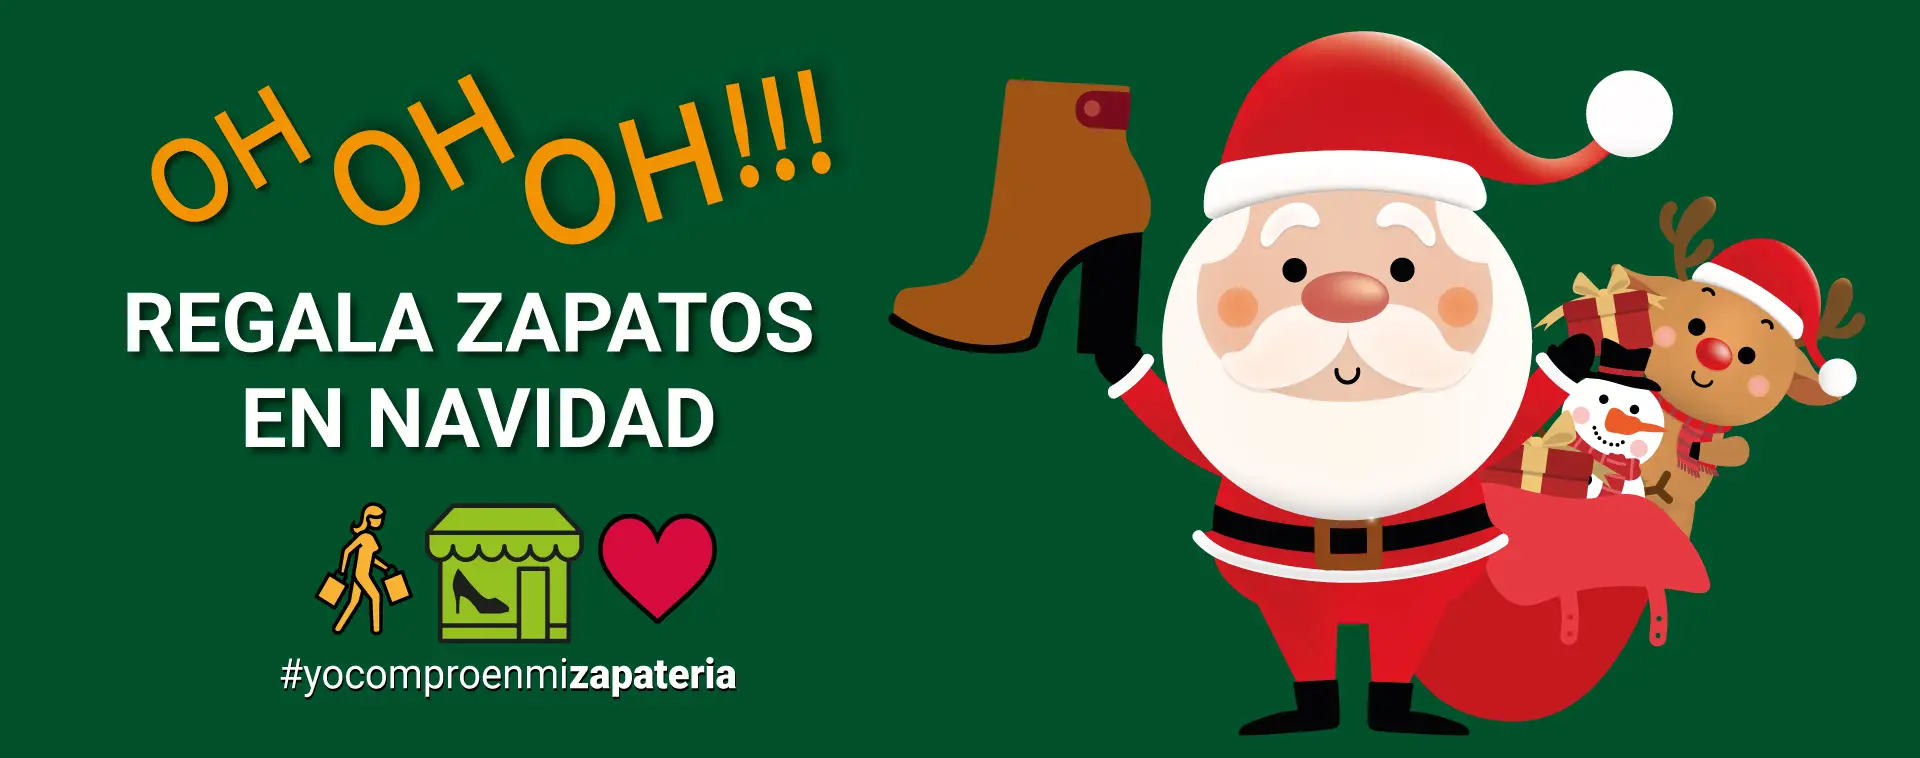 Pepe Menargues lanza una campaña de apoyo a las zapaterías en Navidad